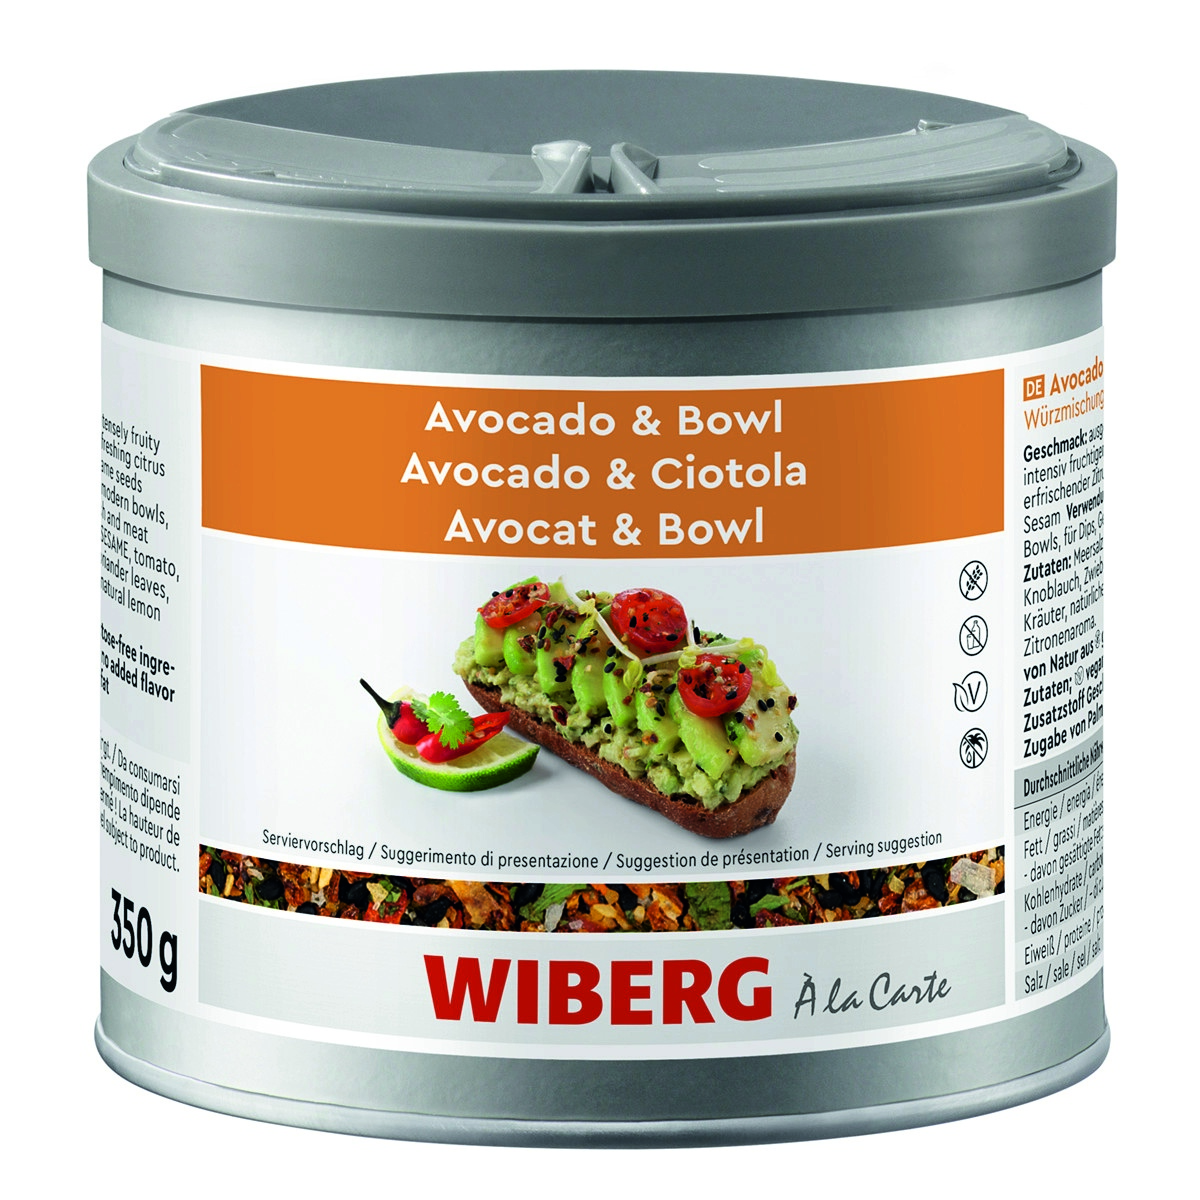 WIBERG Avocado & Bowl